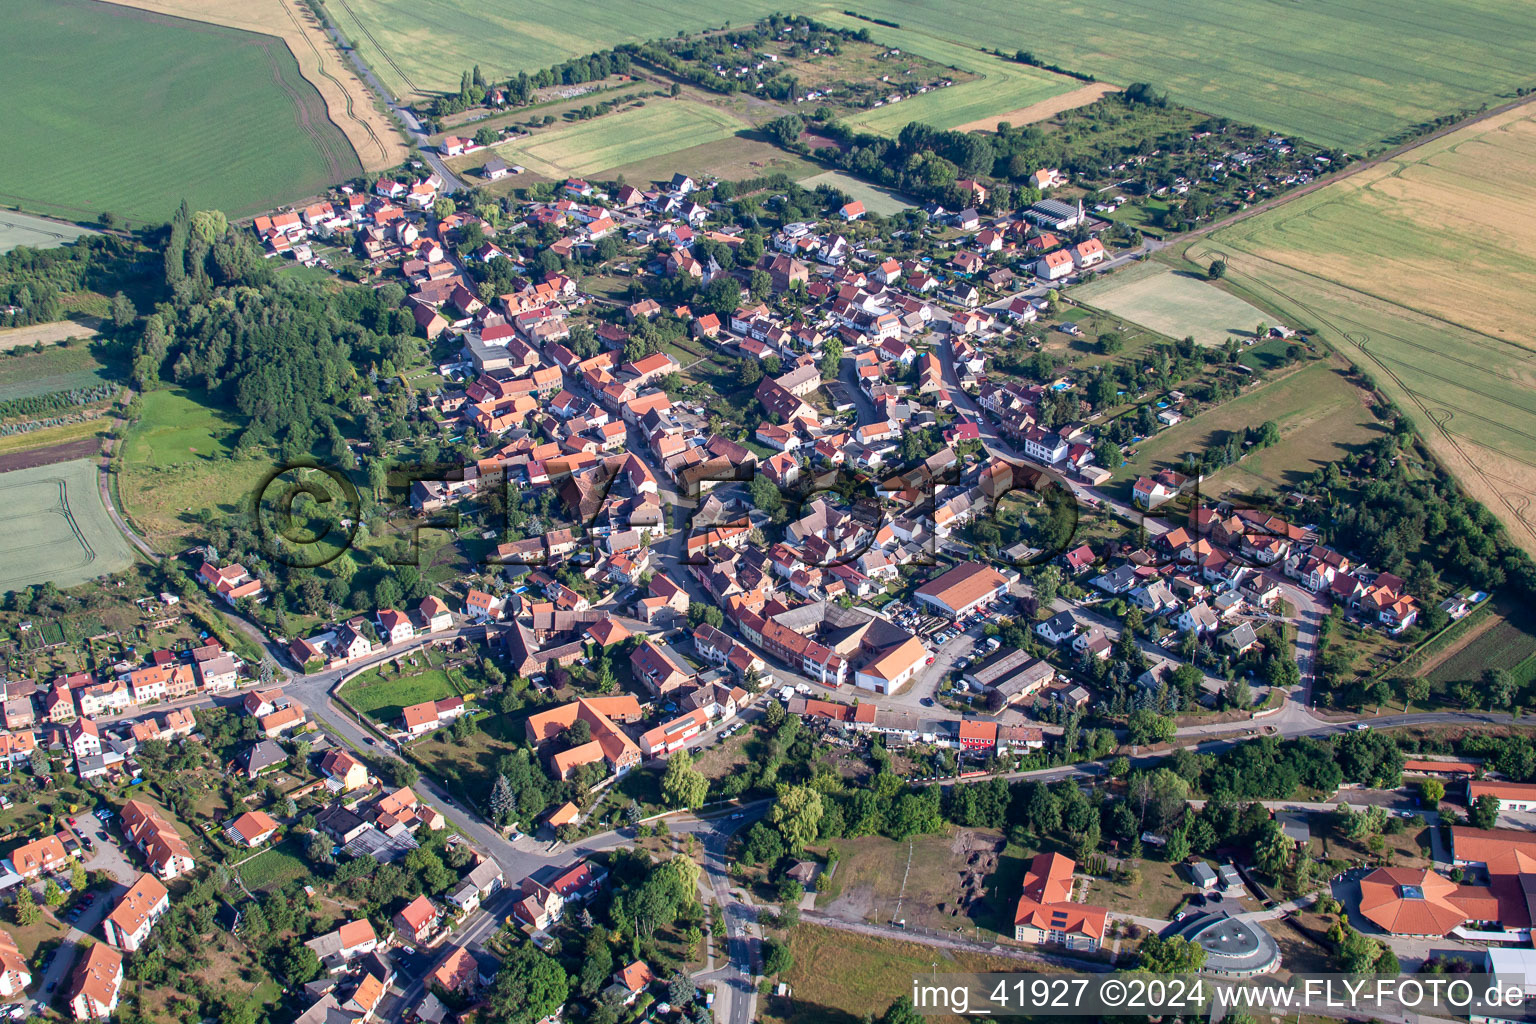 Village view in Weddersleben in the state Saxony-Anhalt, Germany